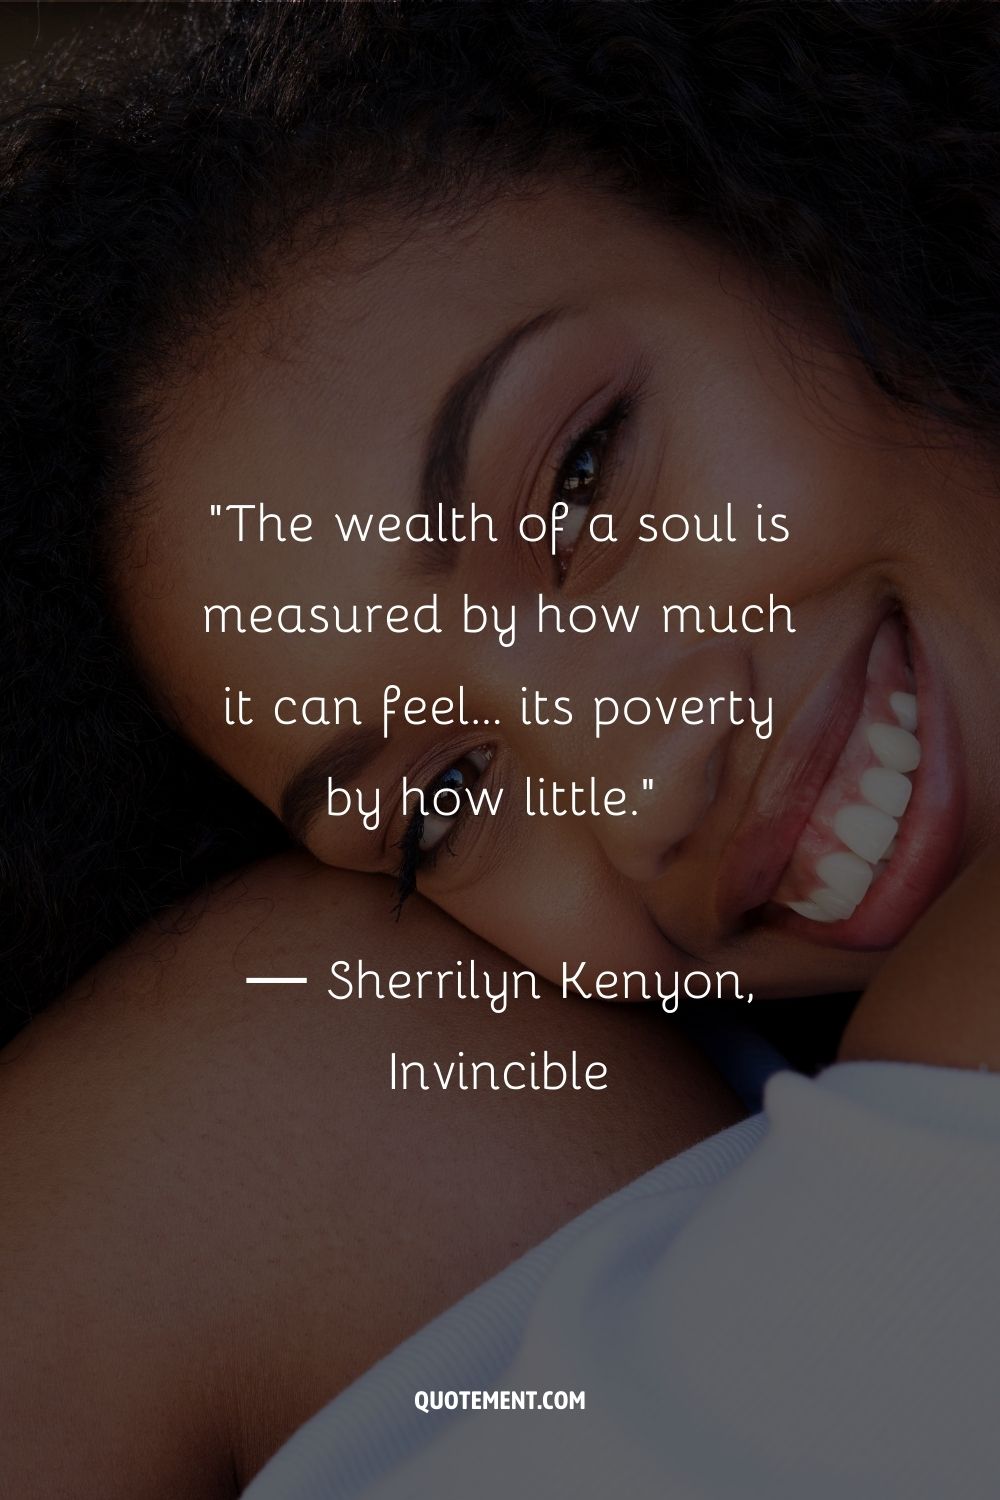 La riqueza de un alma se mide por lo mucho que puede sentir... su pobreza por lo poco...